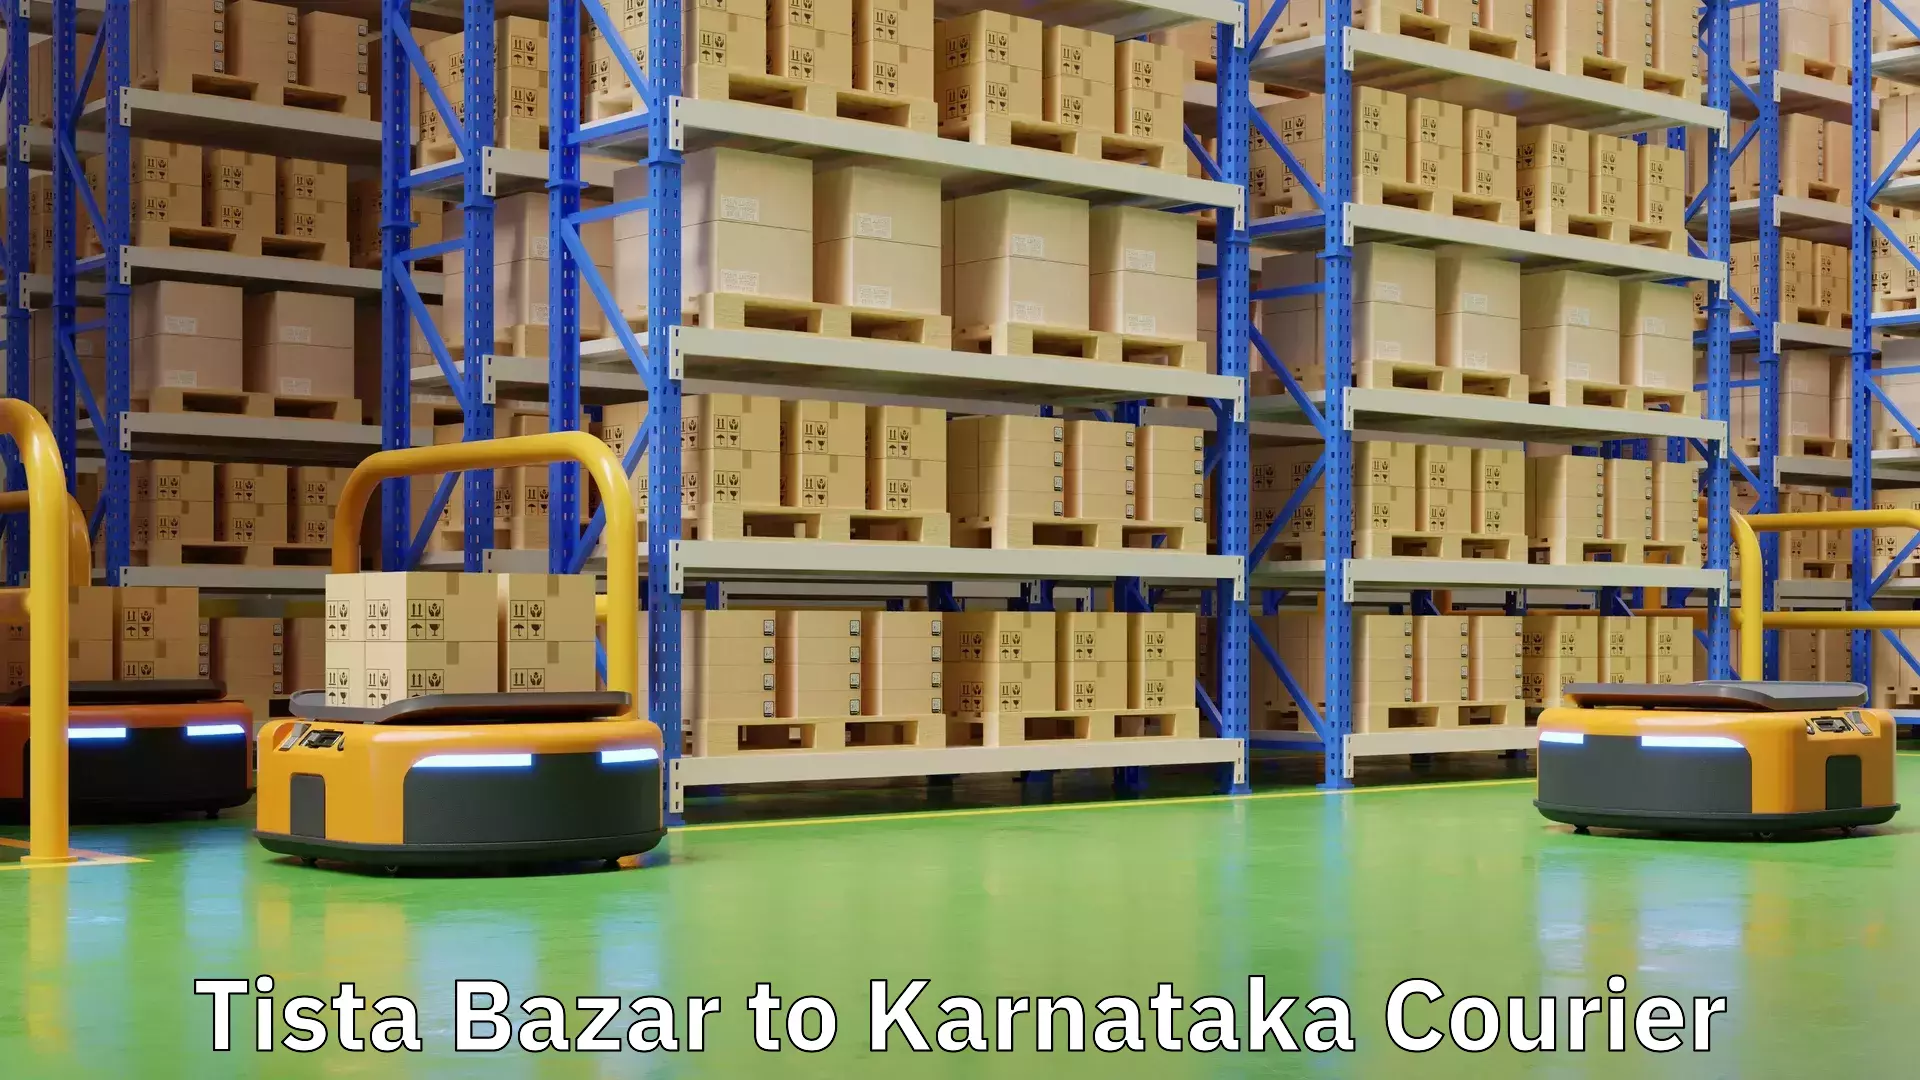 Short distance delivery Tista Bazar to Karnataka